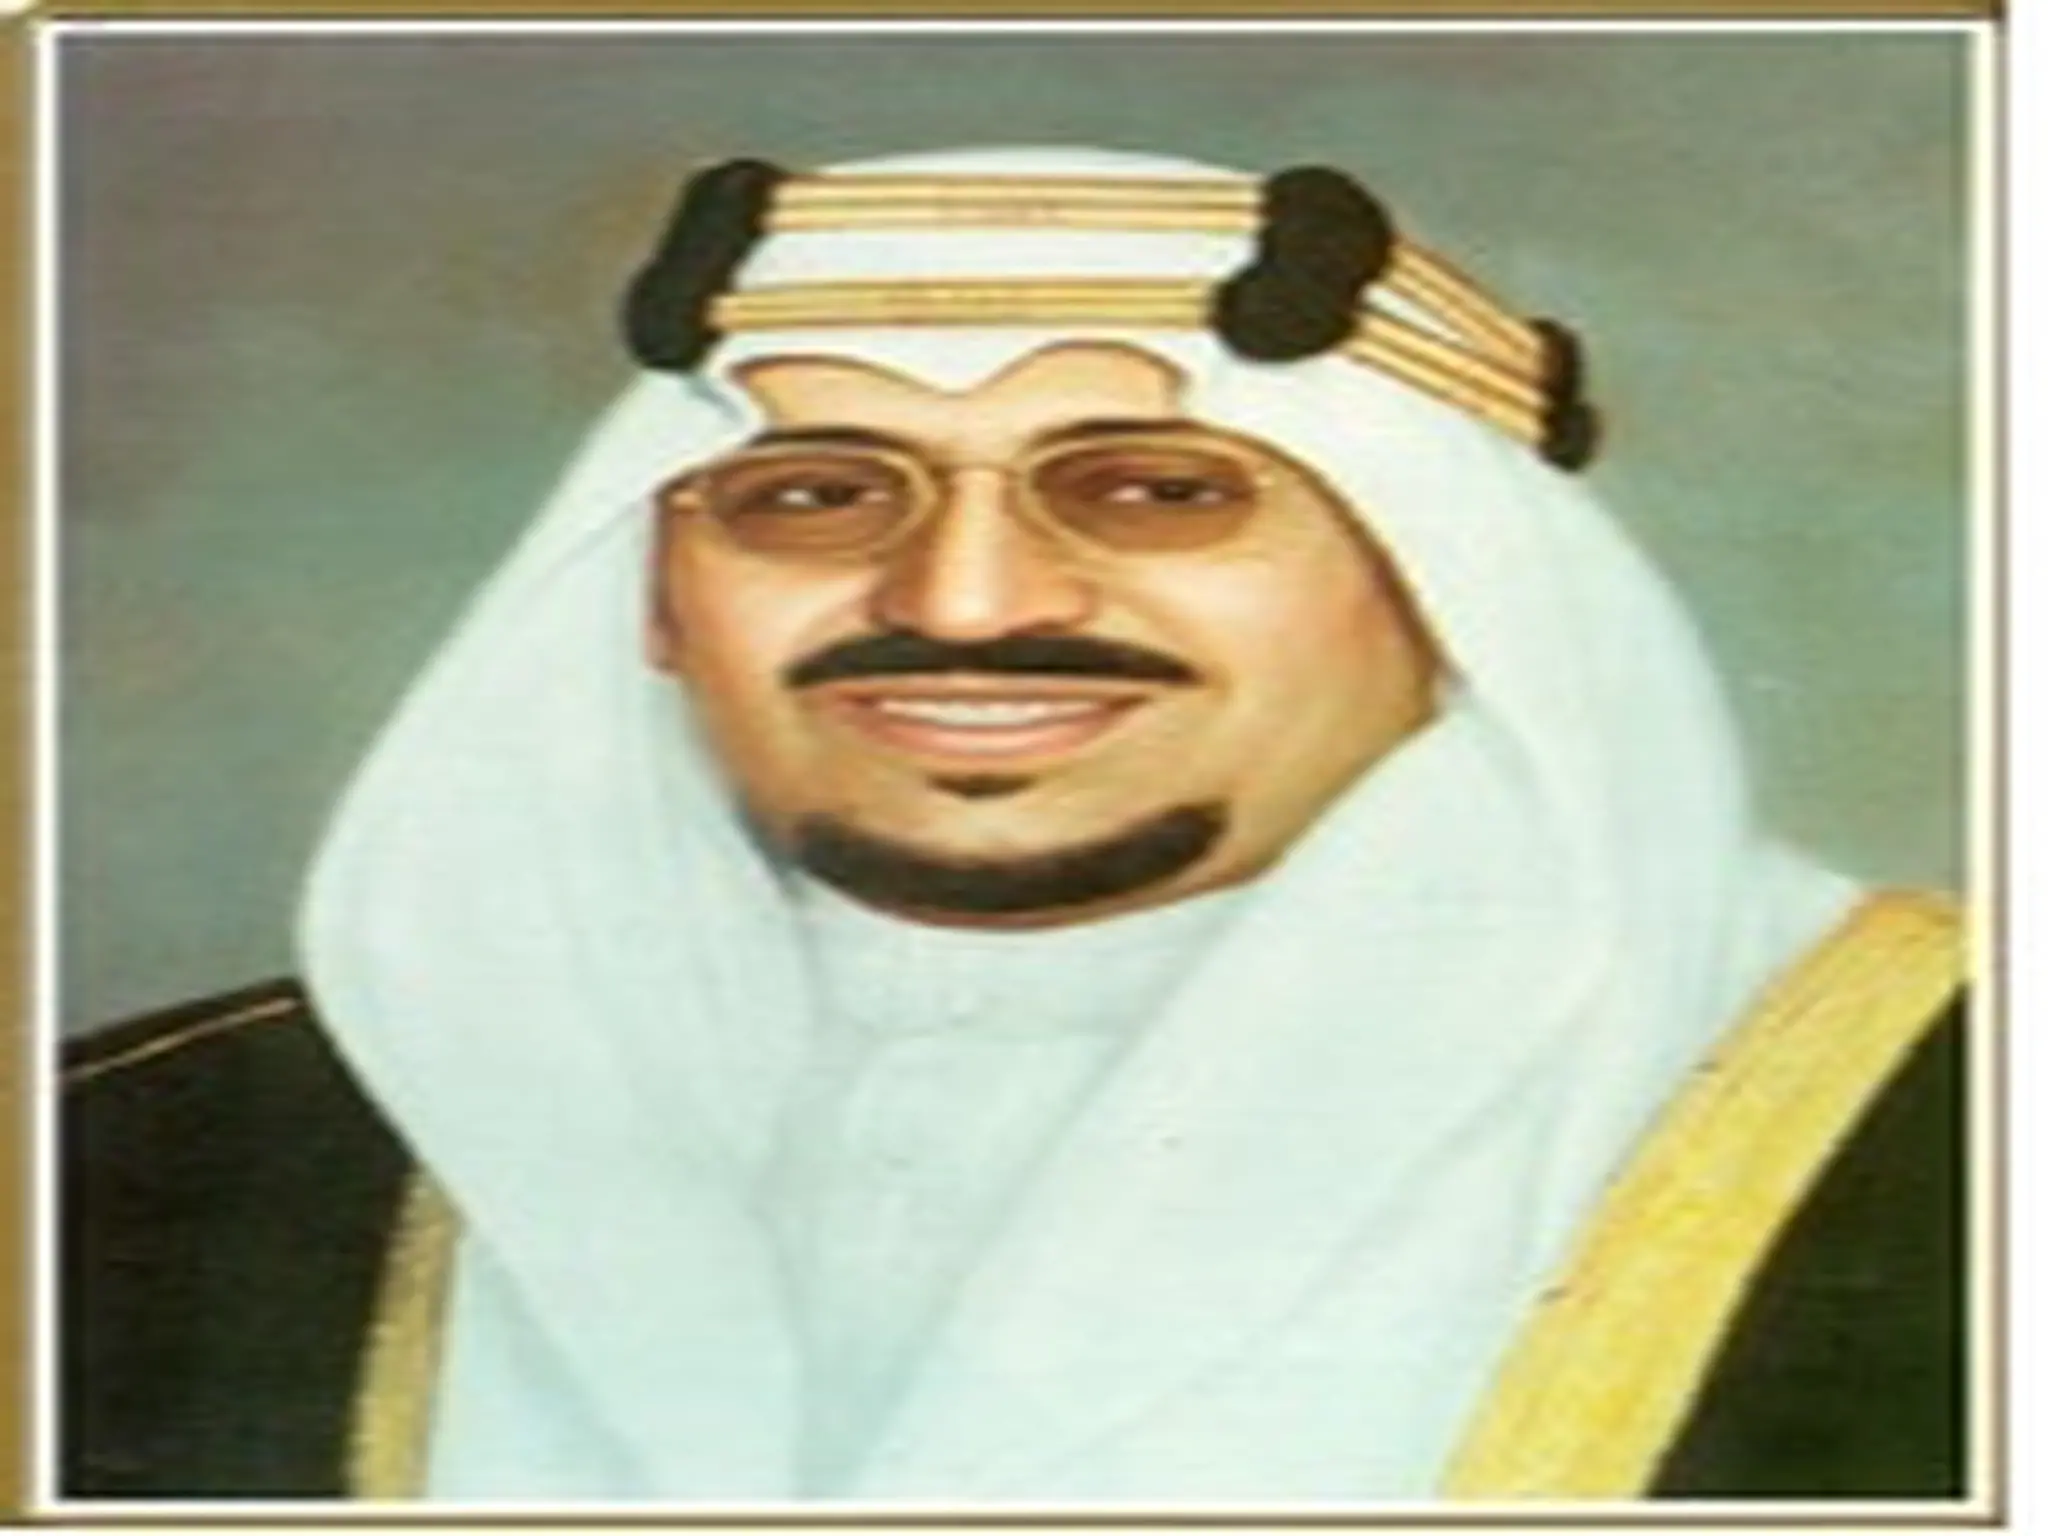 وفاة الملك سعود بن عبد العزيز ال سعود ويكيبيديا